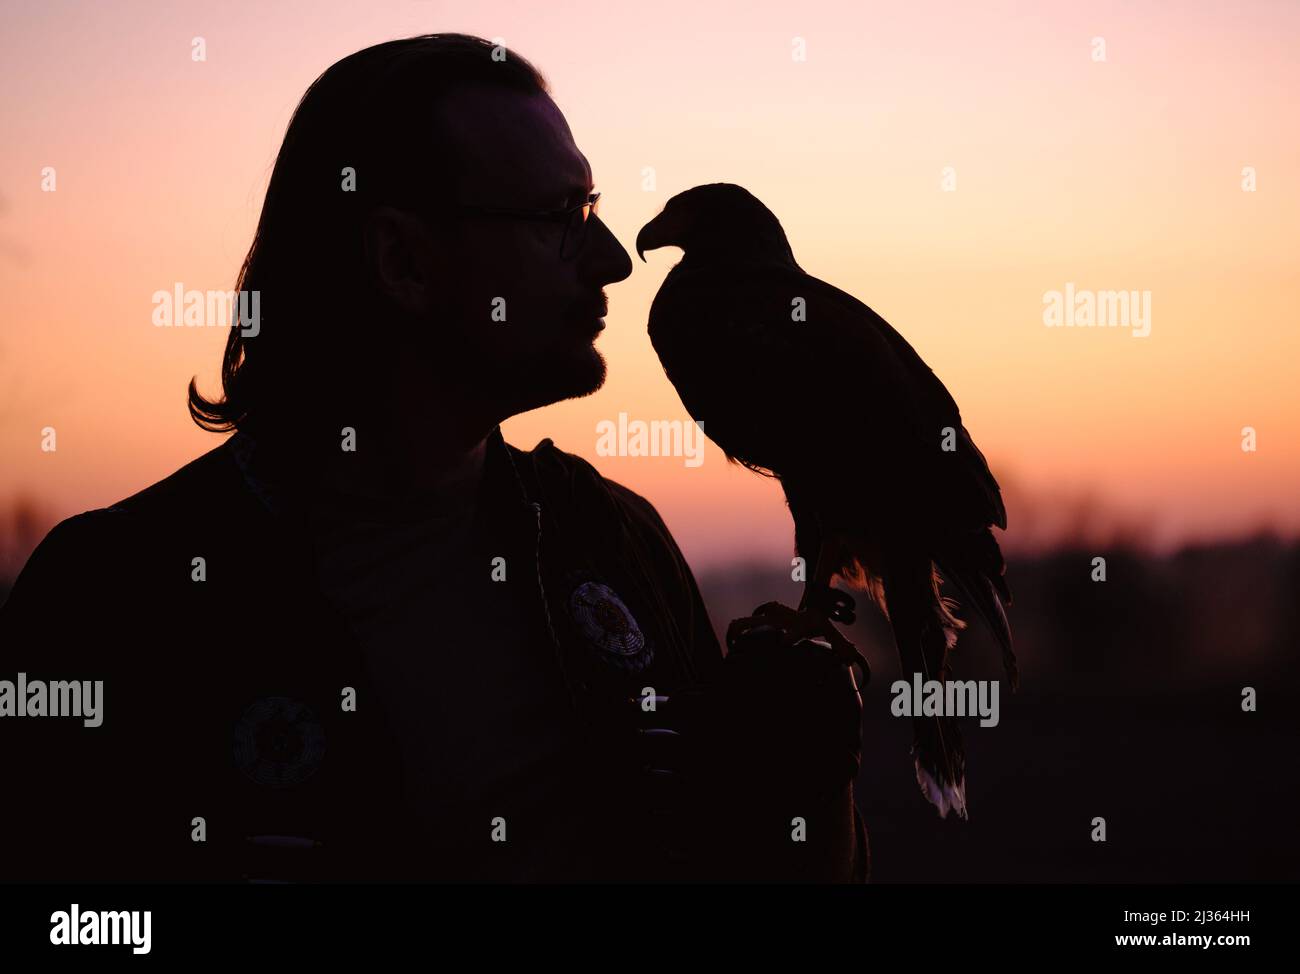 Silhouette von Mensch und wildem Vogel über dem Sonnenuntergang Blick auf einander Bussard oder Adler Symbol der Macht, Sieg, Mut, Größe und spirituelle Stockfoto